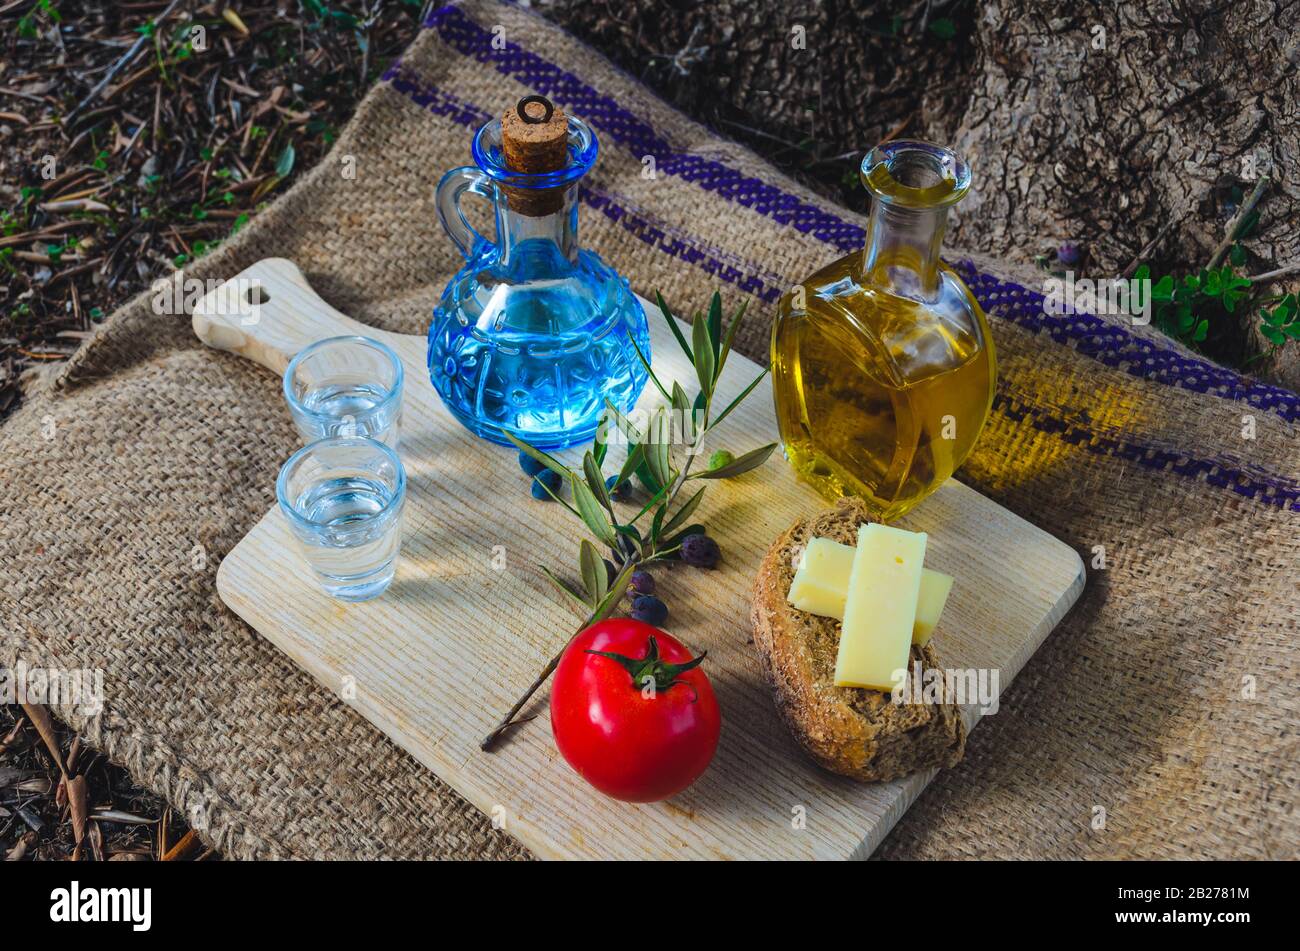 Cuisine crétoise avec huile d'olive vierge, olives, Barley Rusks crétois, fromage local et carafe de raki crétois. Banque D'Images